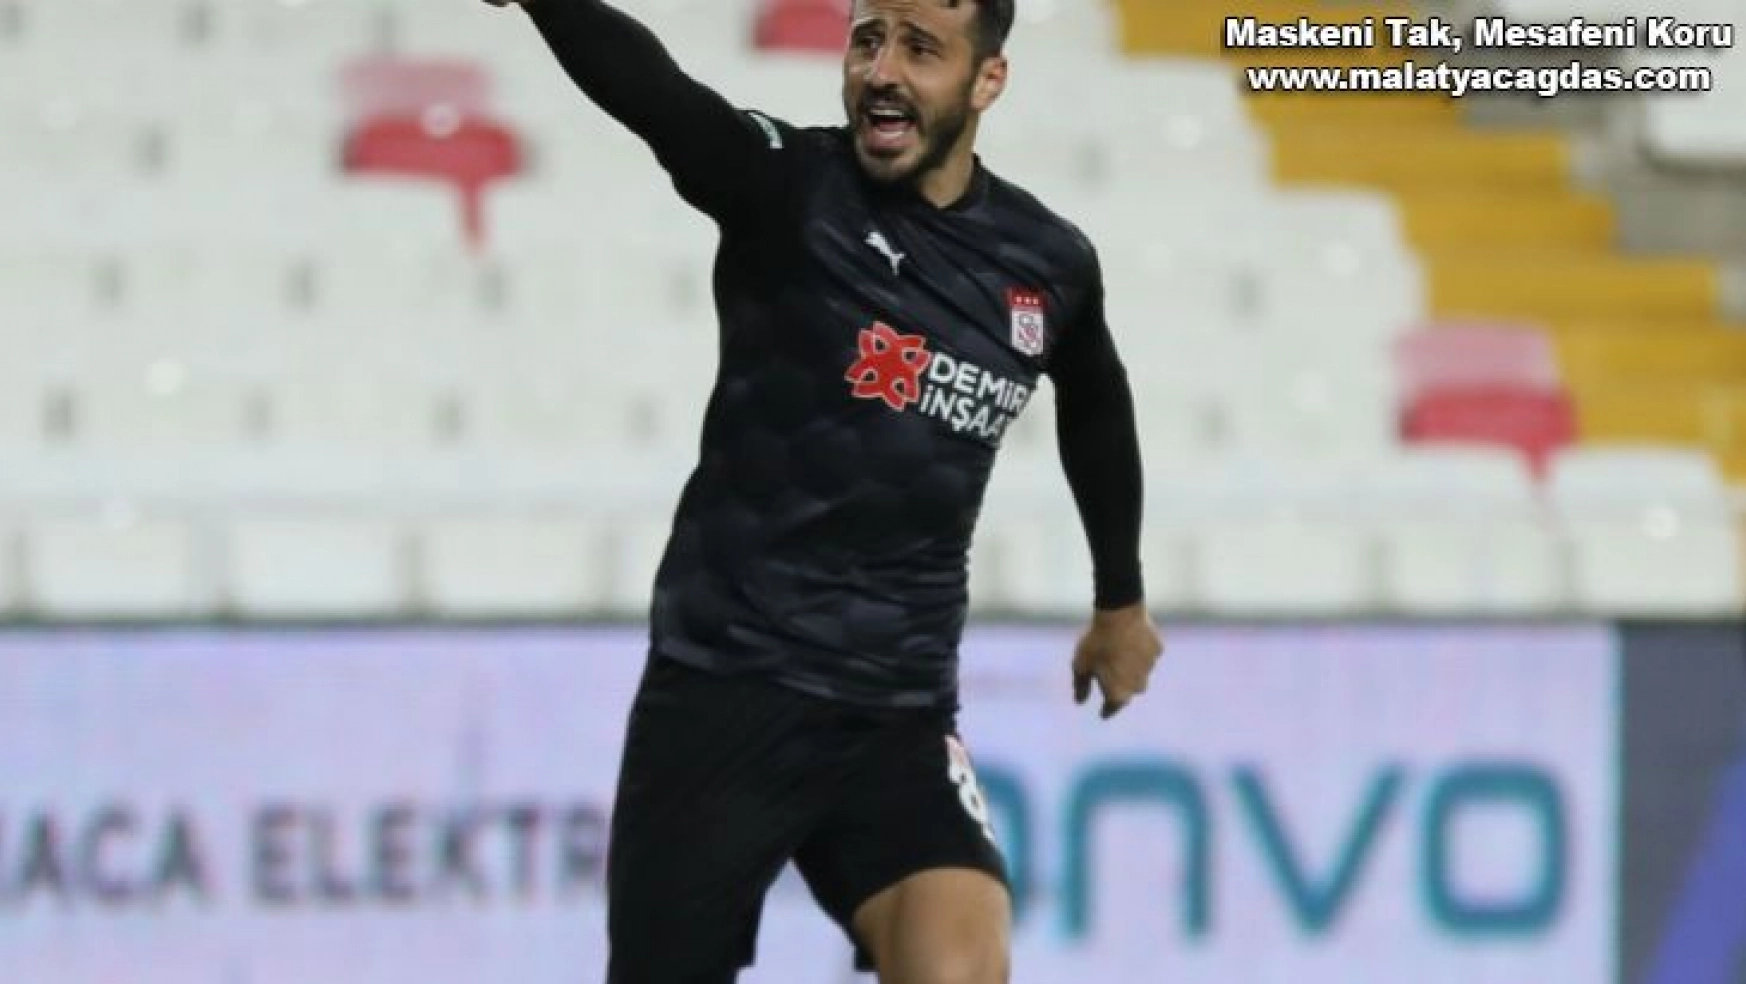 Caner Osmanpaşa 2 yıl daha Sivasspor'da